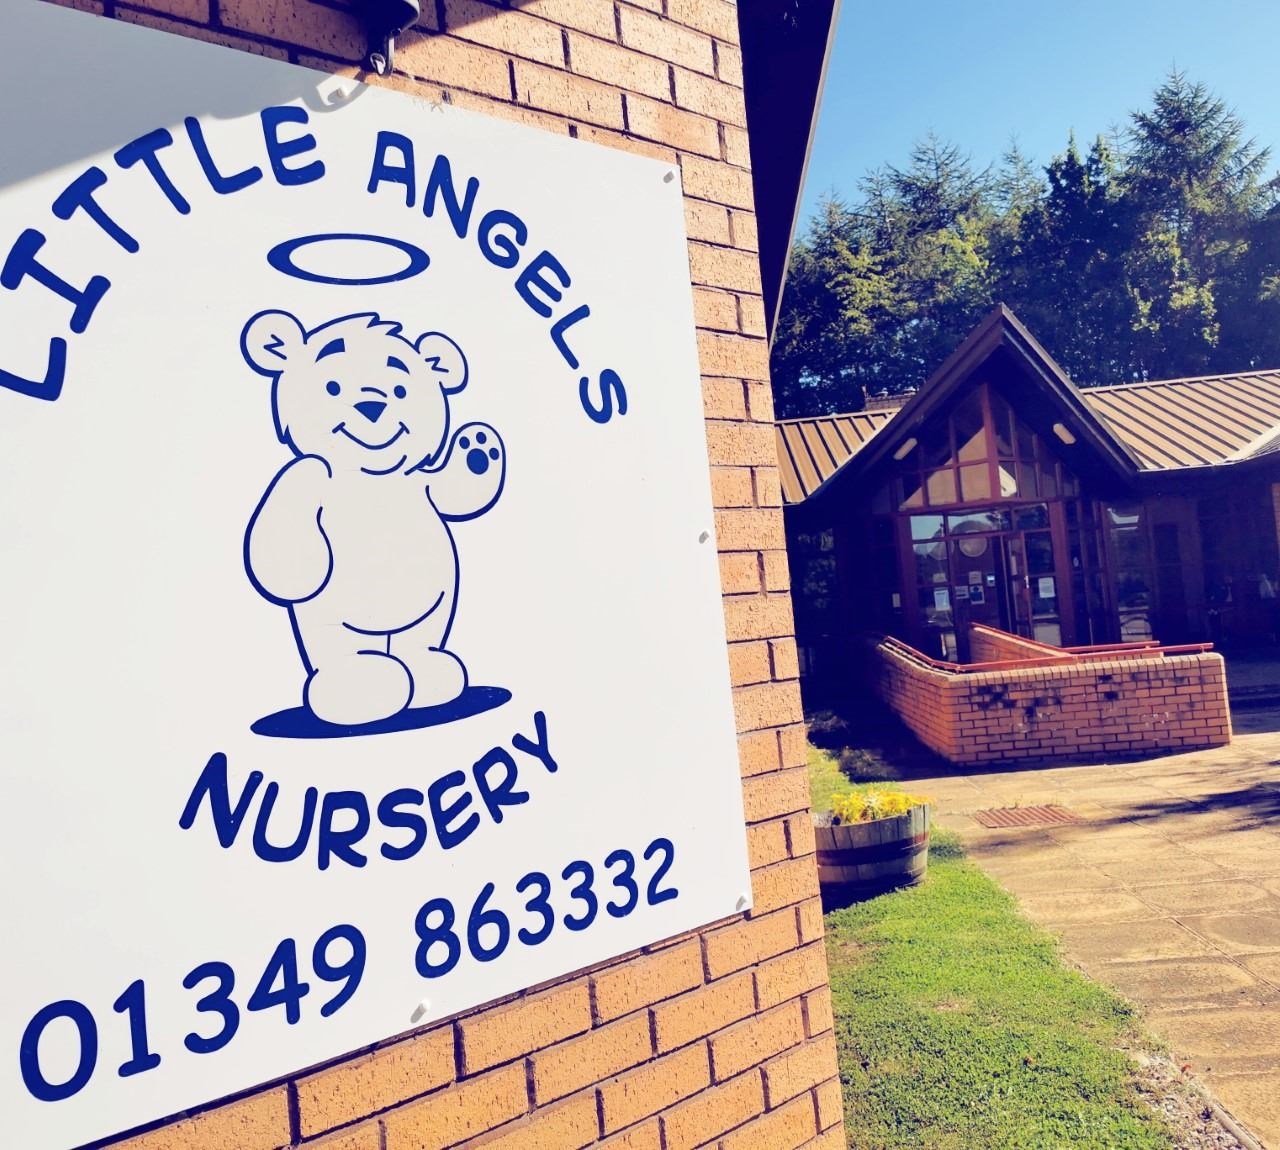 Little Angels Nursery in DIngwall.